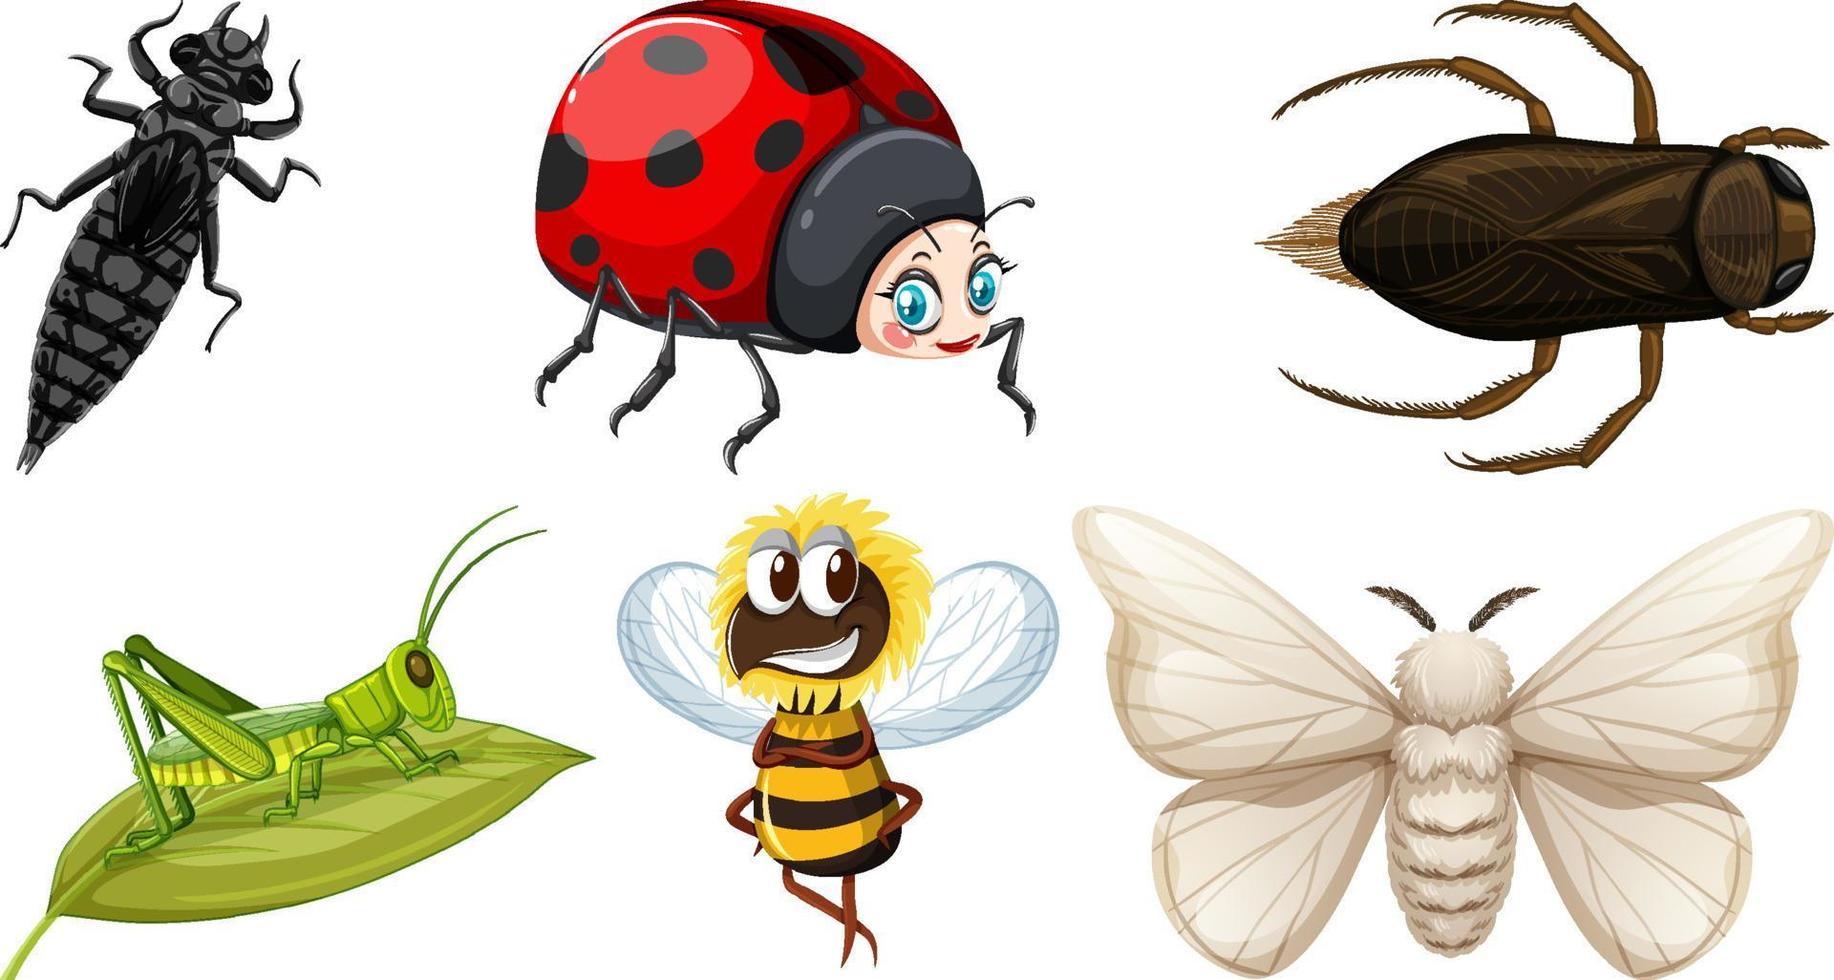 impostato di diverso tipi di insetti vettore